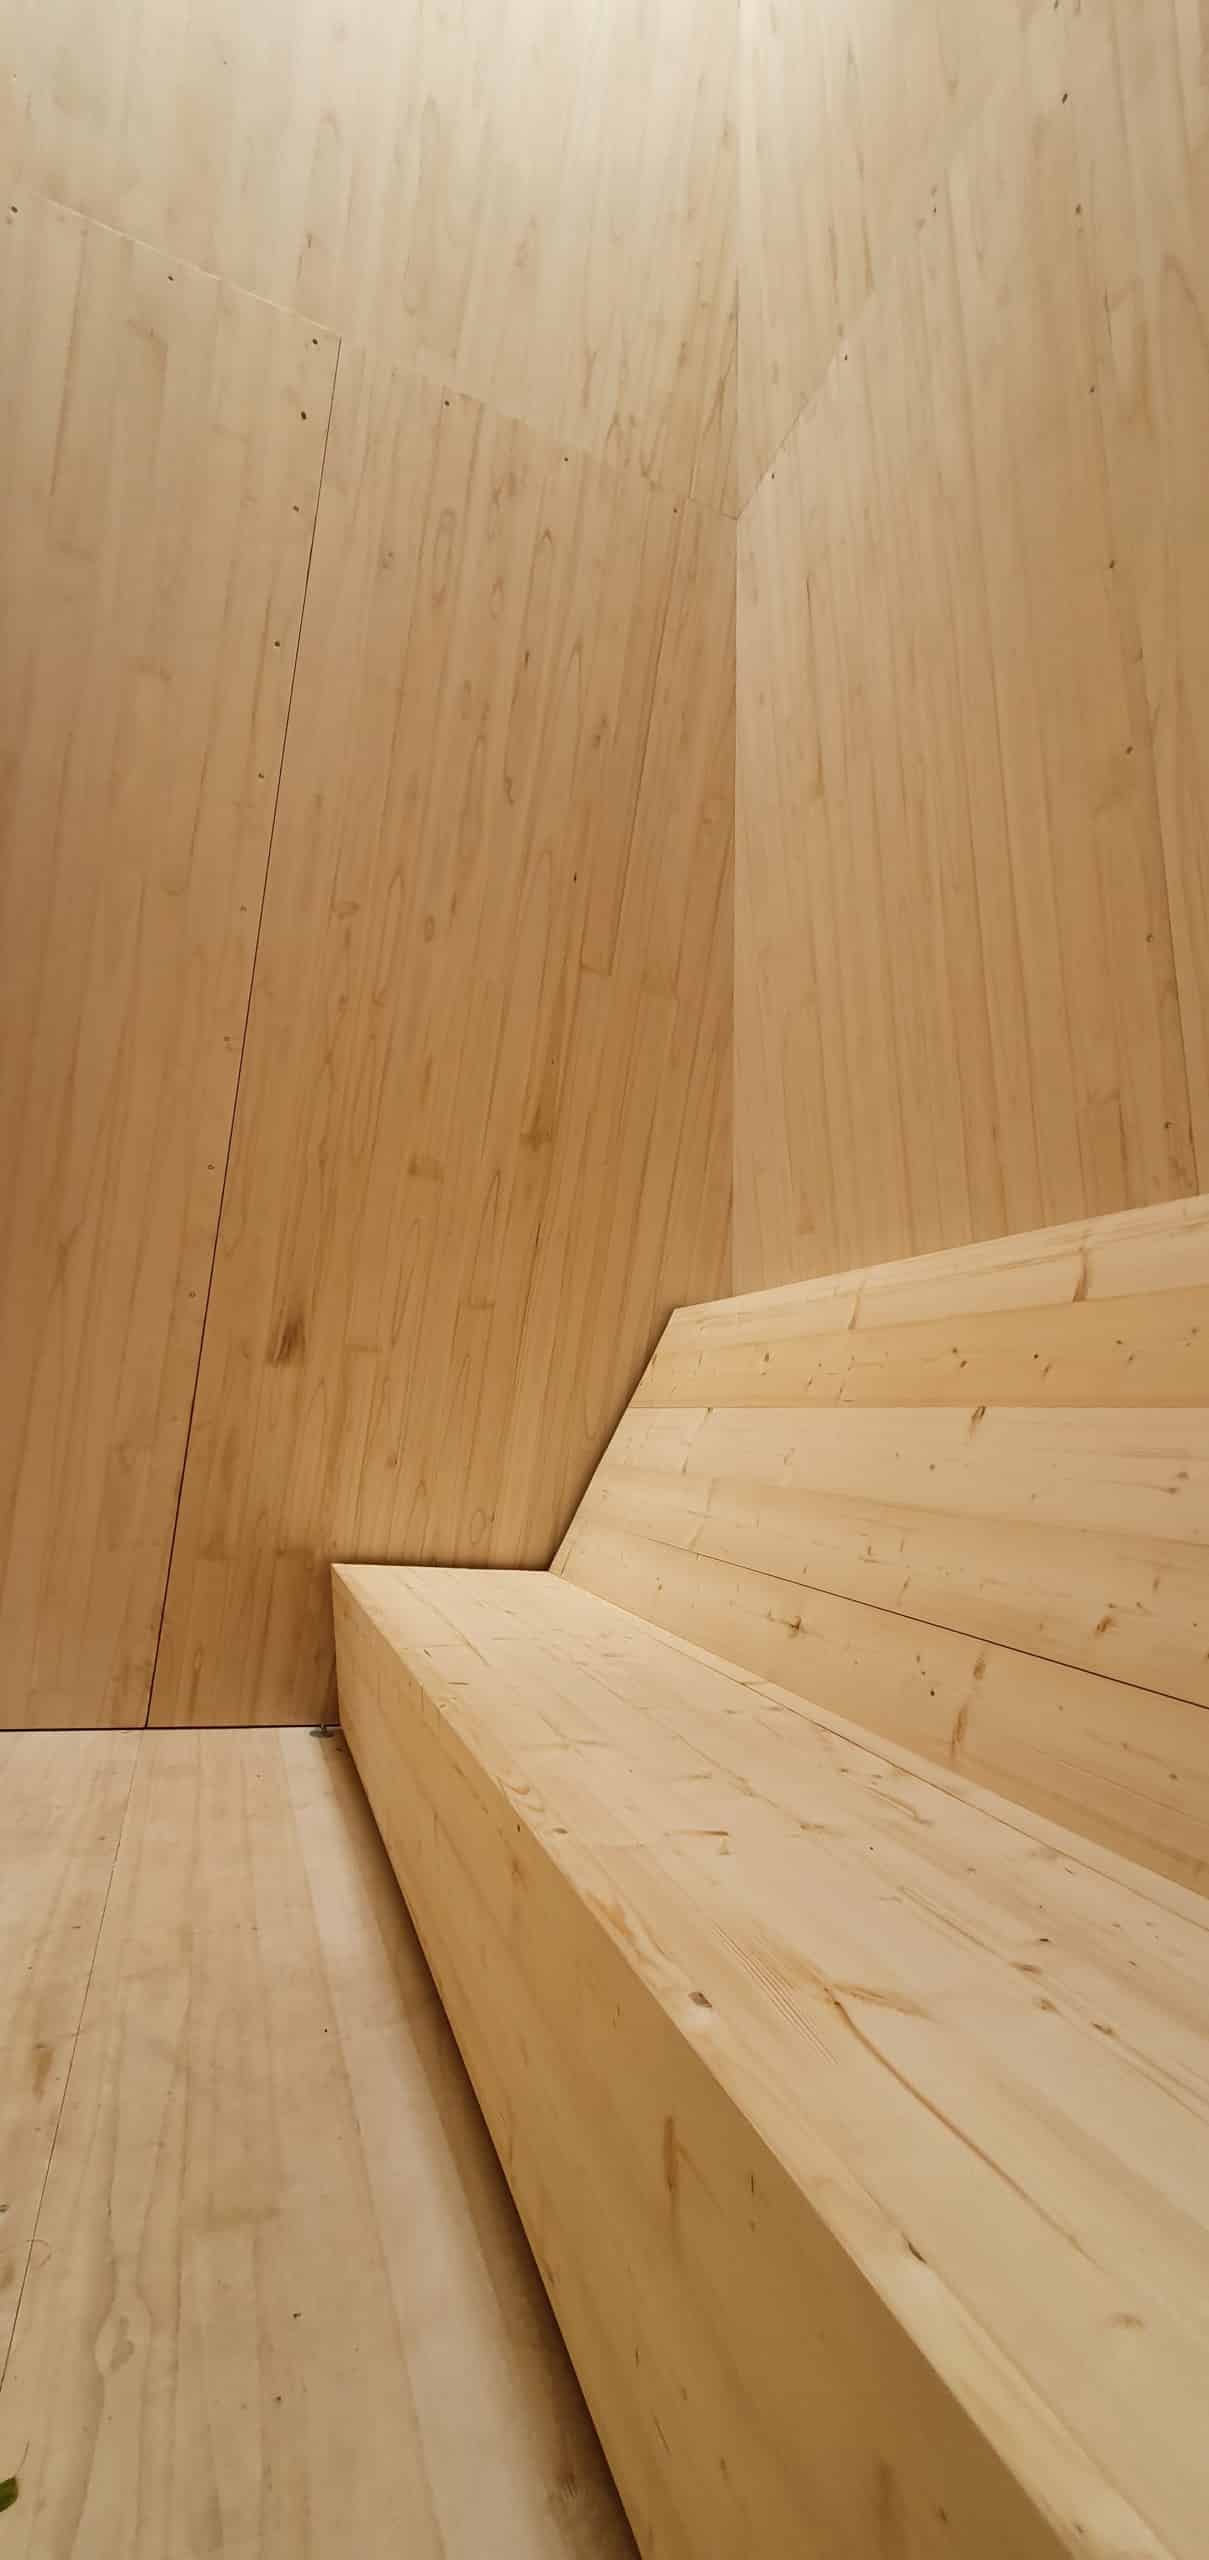 Eine lange, hölzerne Bank in einem Raum mit Wänden und Boden ebenfalls aus Holz. Documenta fifteen, Reflecting Point 7 am Hallenbad Ost: KIRI Project, Foto: